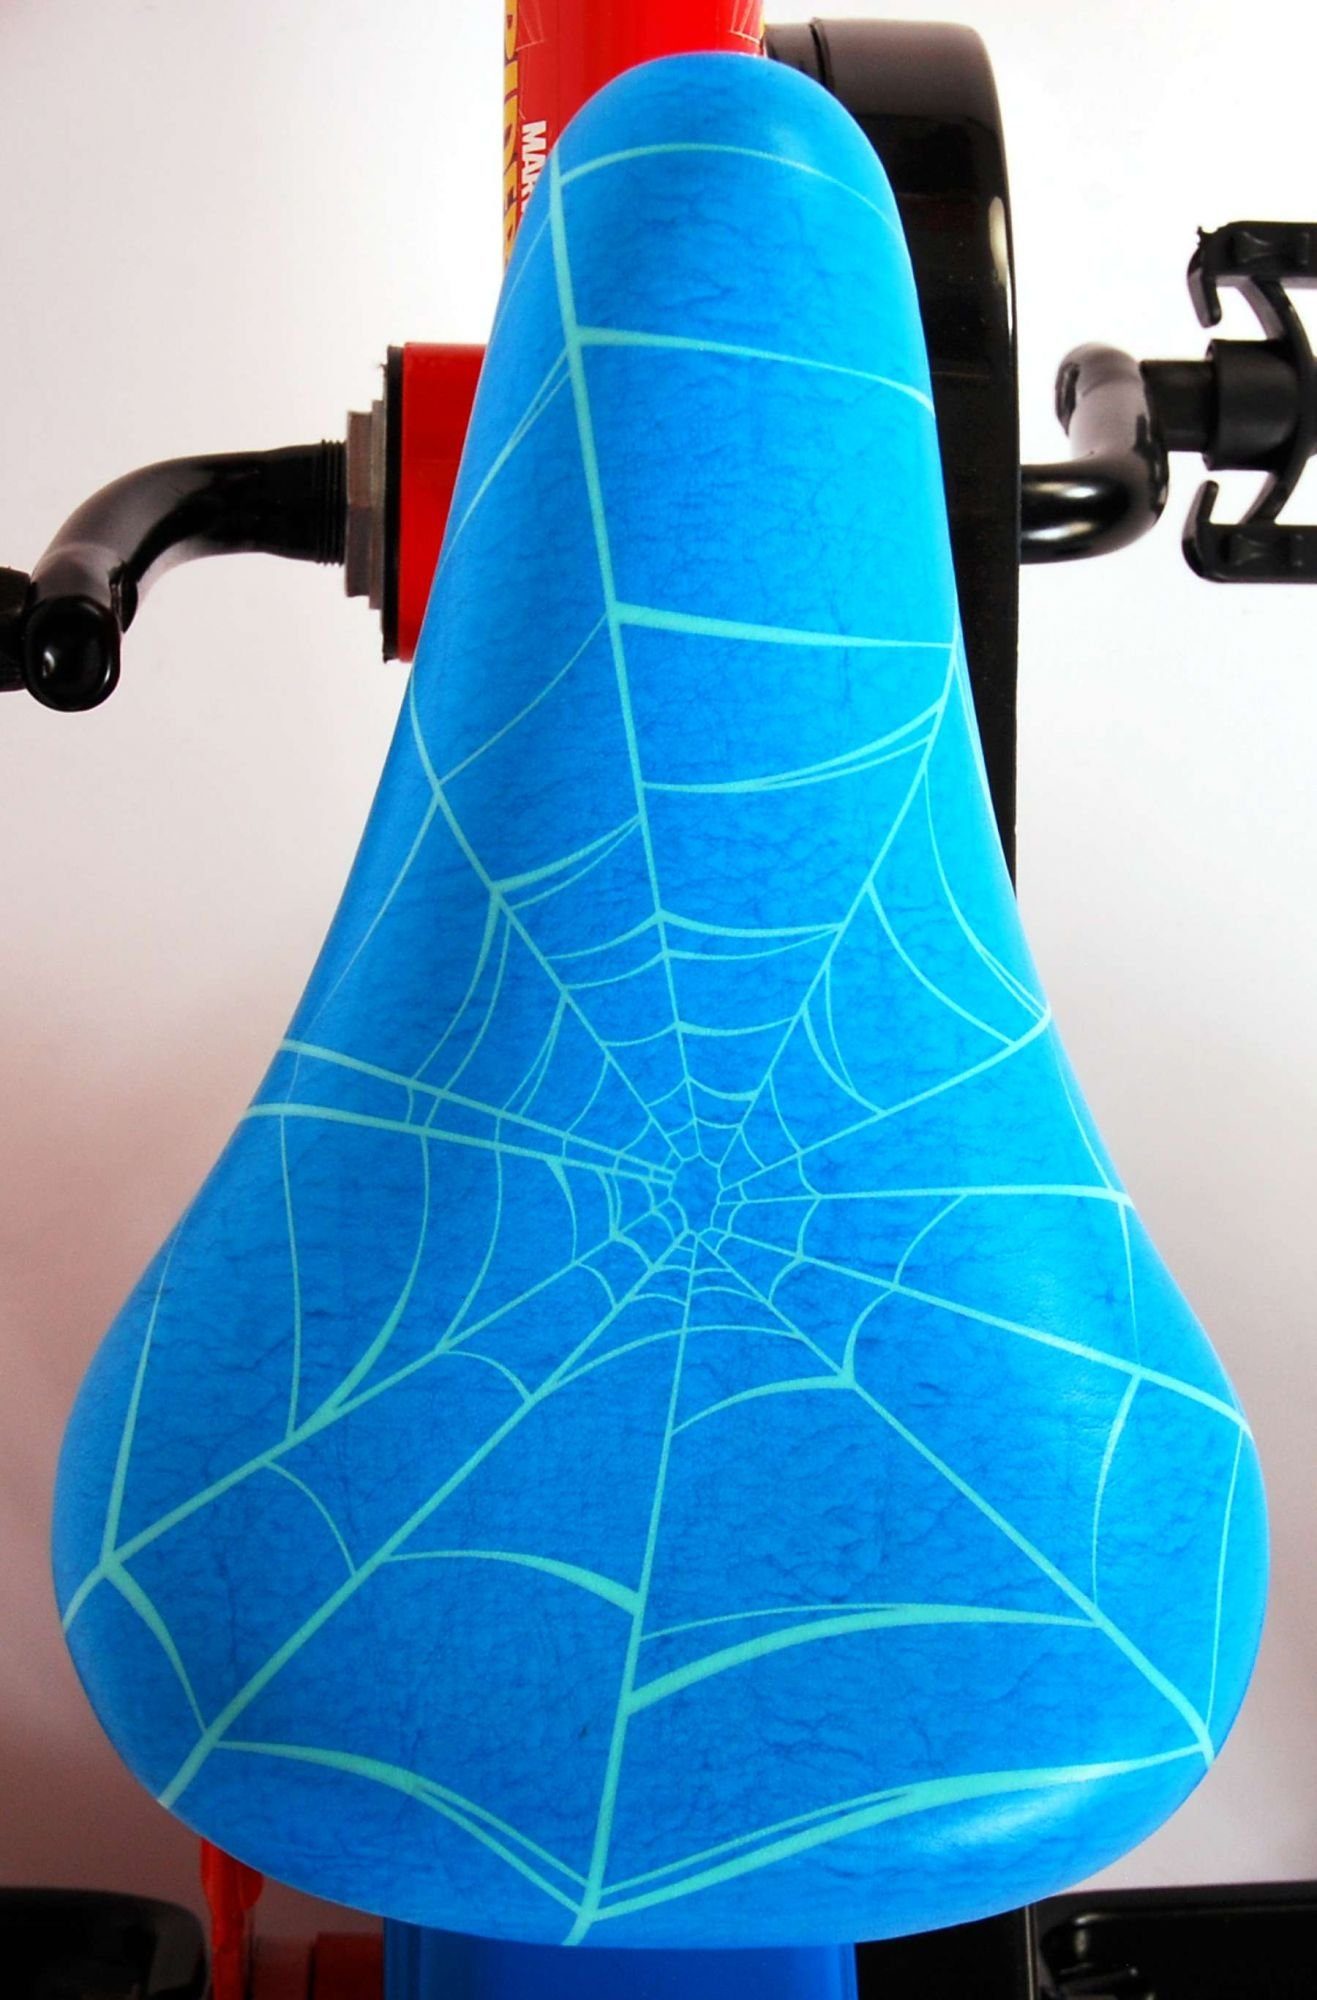 Spiderman Fester Jungen - - Reifen, 85% 35 EVA kg Jahre, - 4 - 2 zusammengebaut, Plastikfelgen bis Kinderfahrrad 10 Zoll - - Blau/Rot Gang